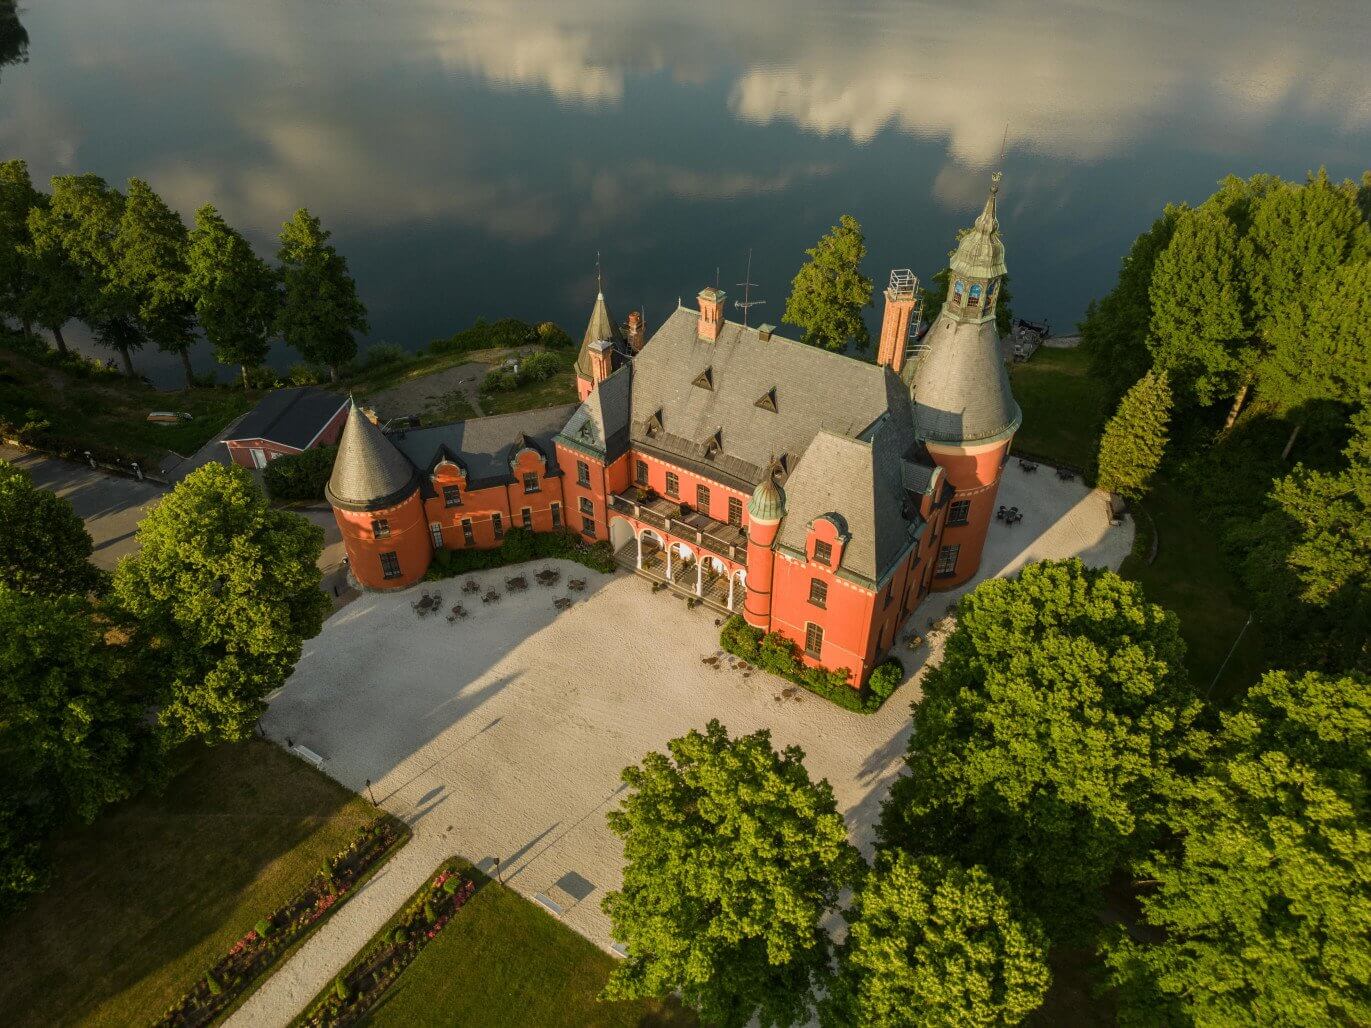 Precis intill Lejondalssjön i Bro, norr om Stockholm, ligger Lejondals Slott